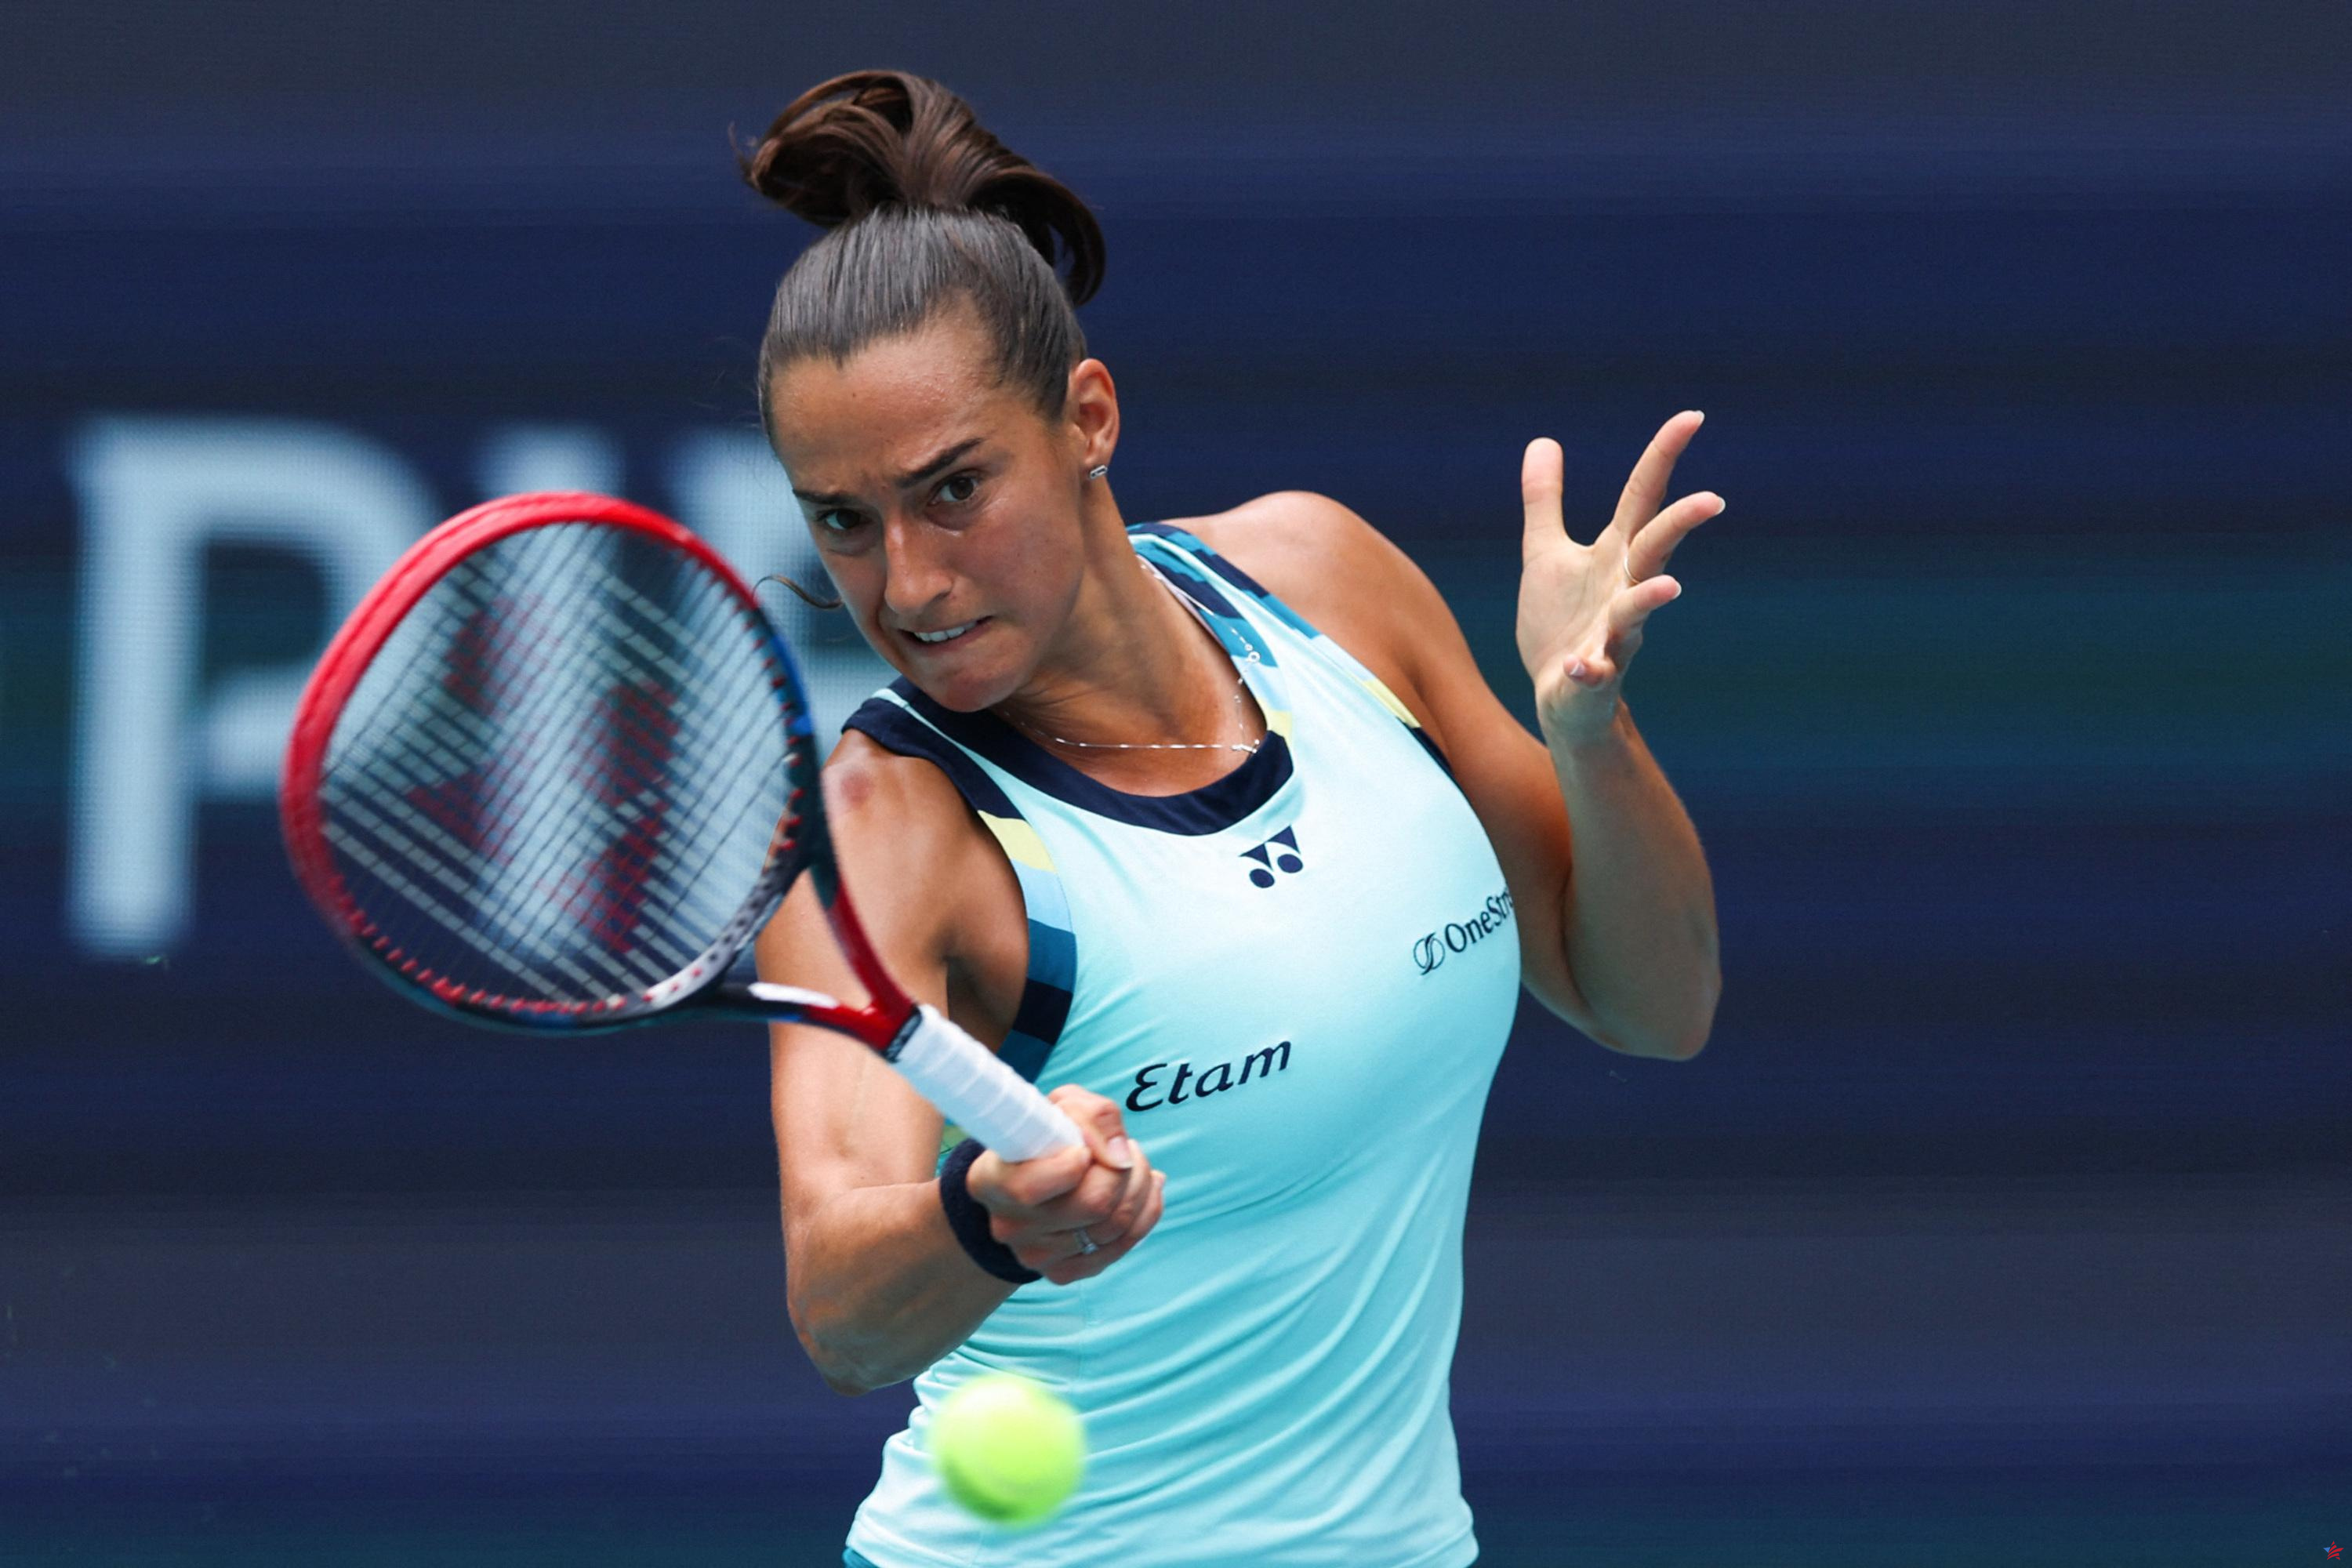 Tenis: García fue ampliamente derrotado en los cuartos de final de la WTA 1000 en Miami por Collins